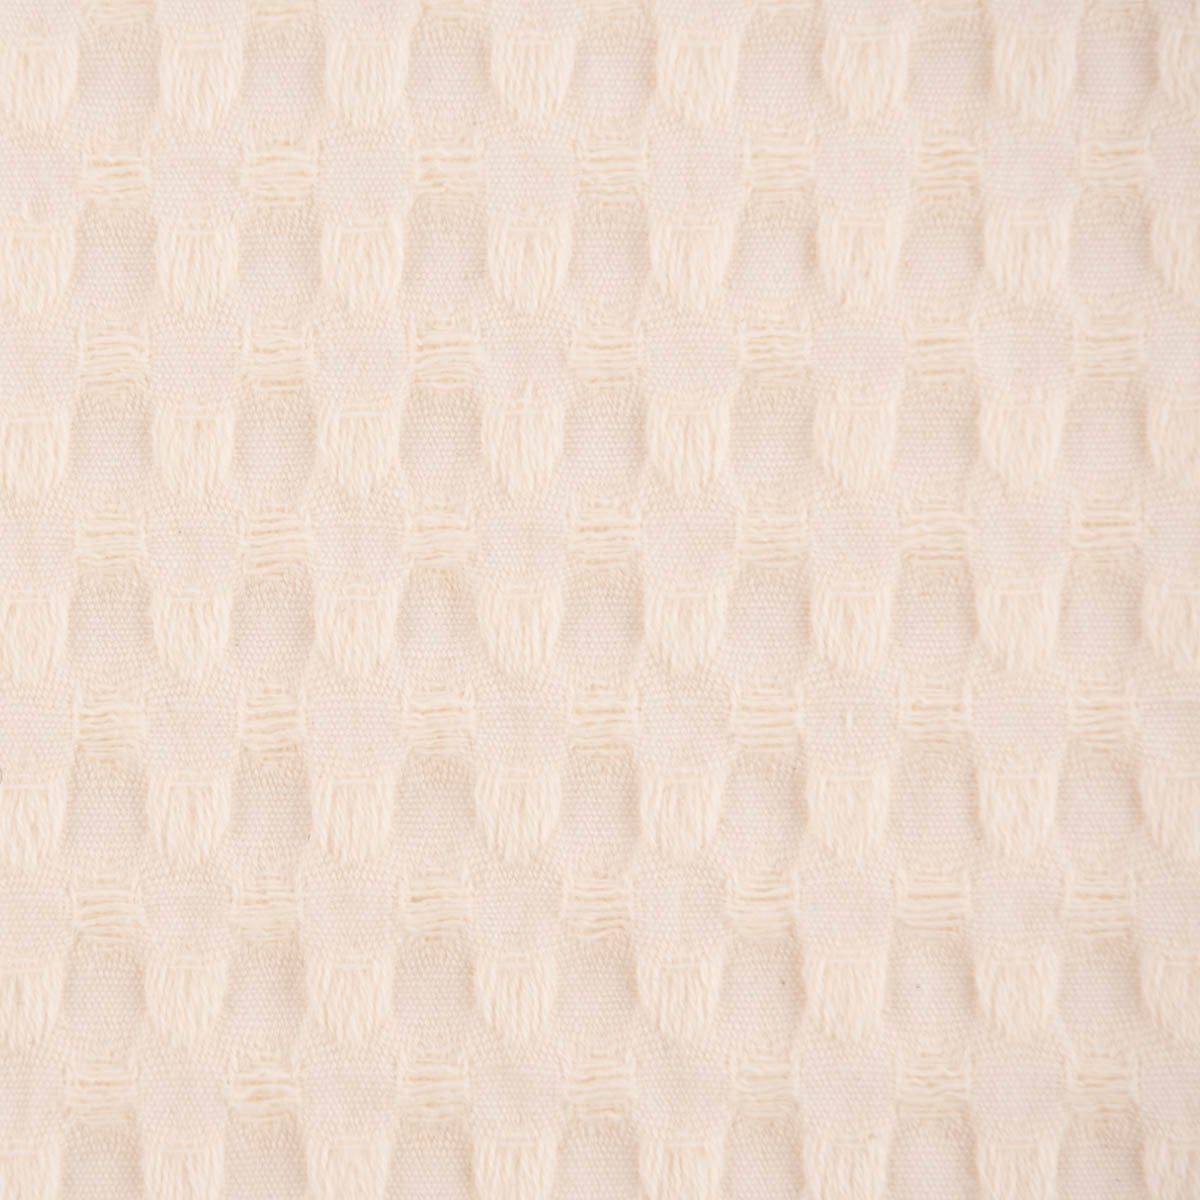 SCHÖNER LEBEN. Stoff Waffelpique soft Waffelstoff Baumwolle uni ecru 1,35m Breite, atmungsaktiv